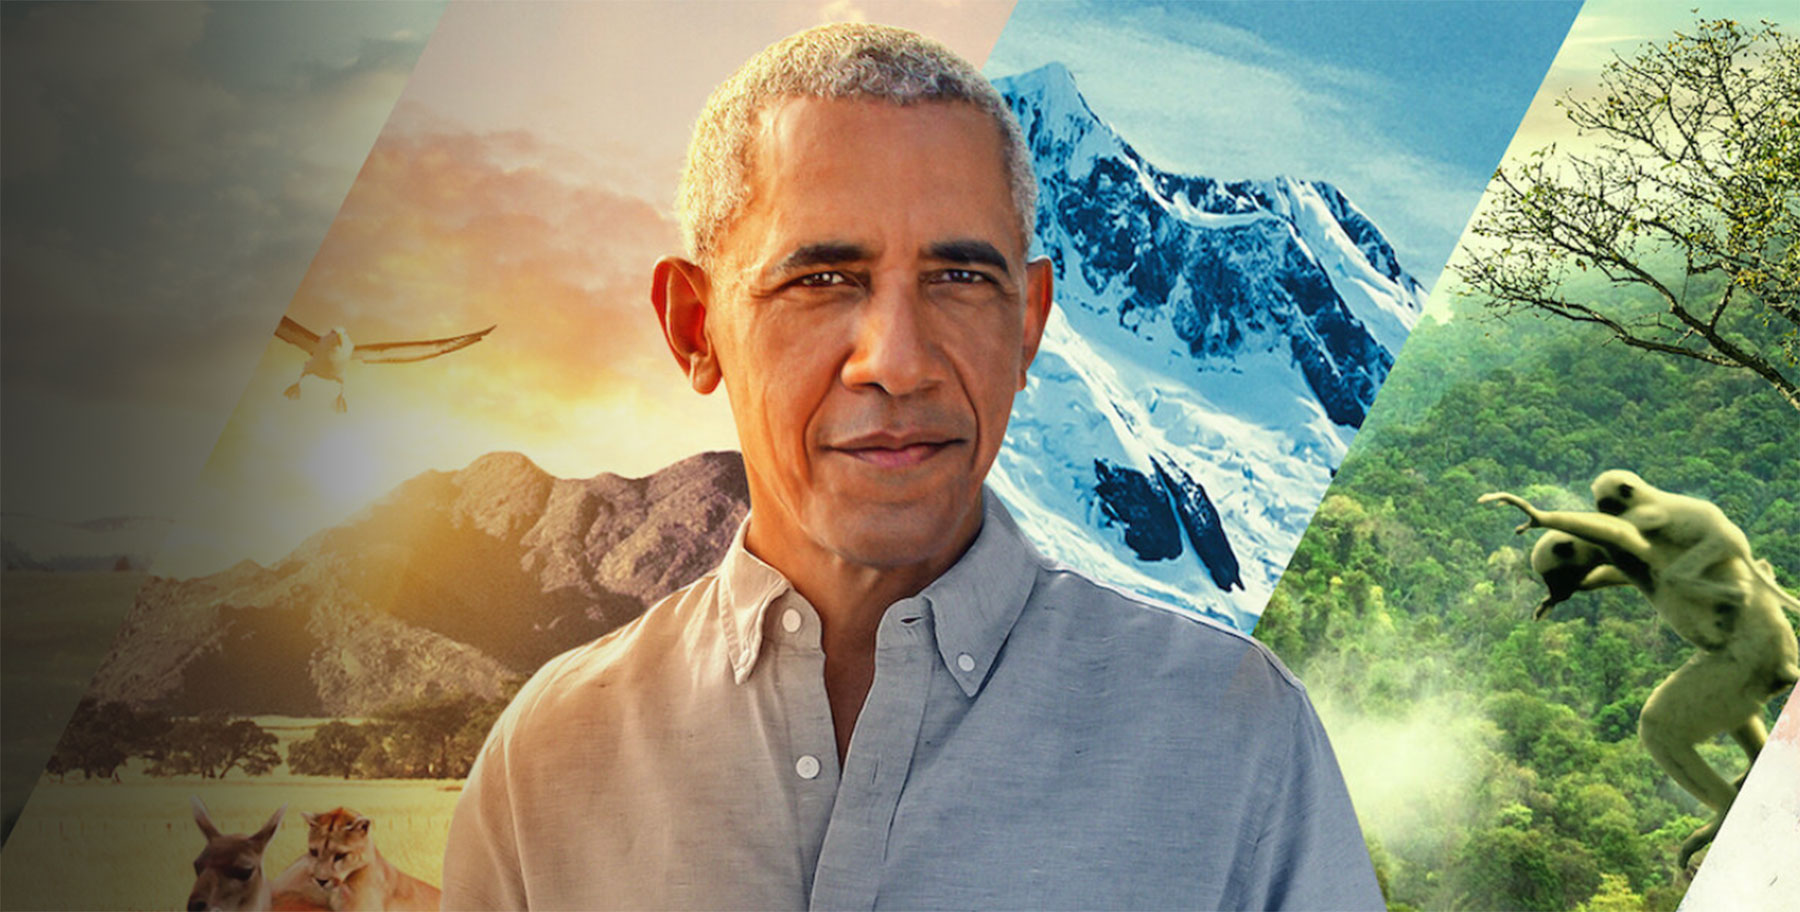 Obama Talks Up Biodiversity in Excellent Netflix Series